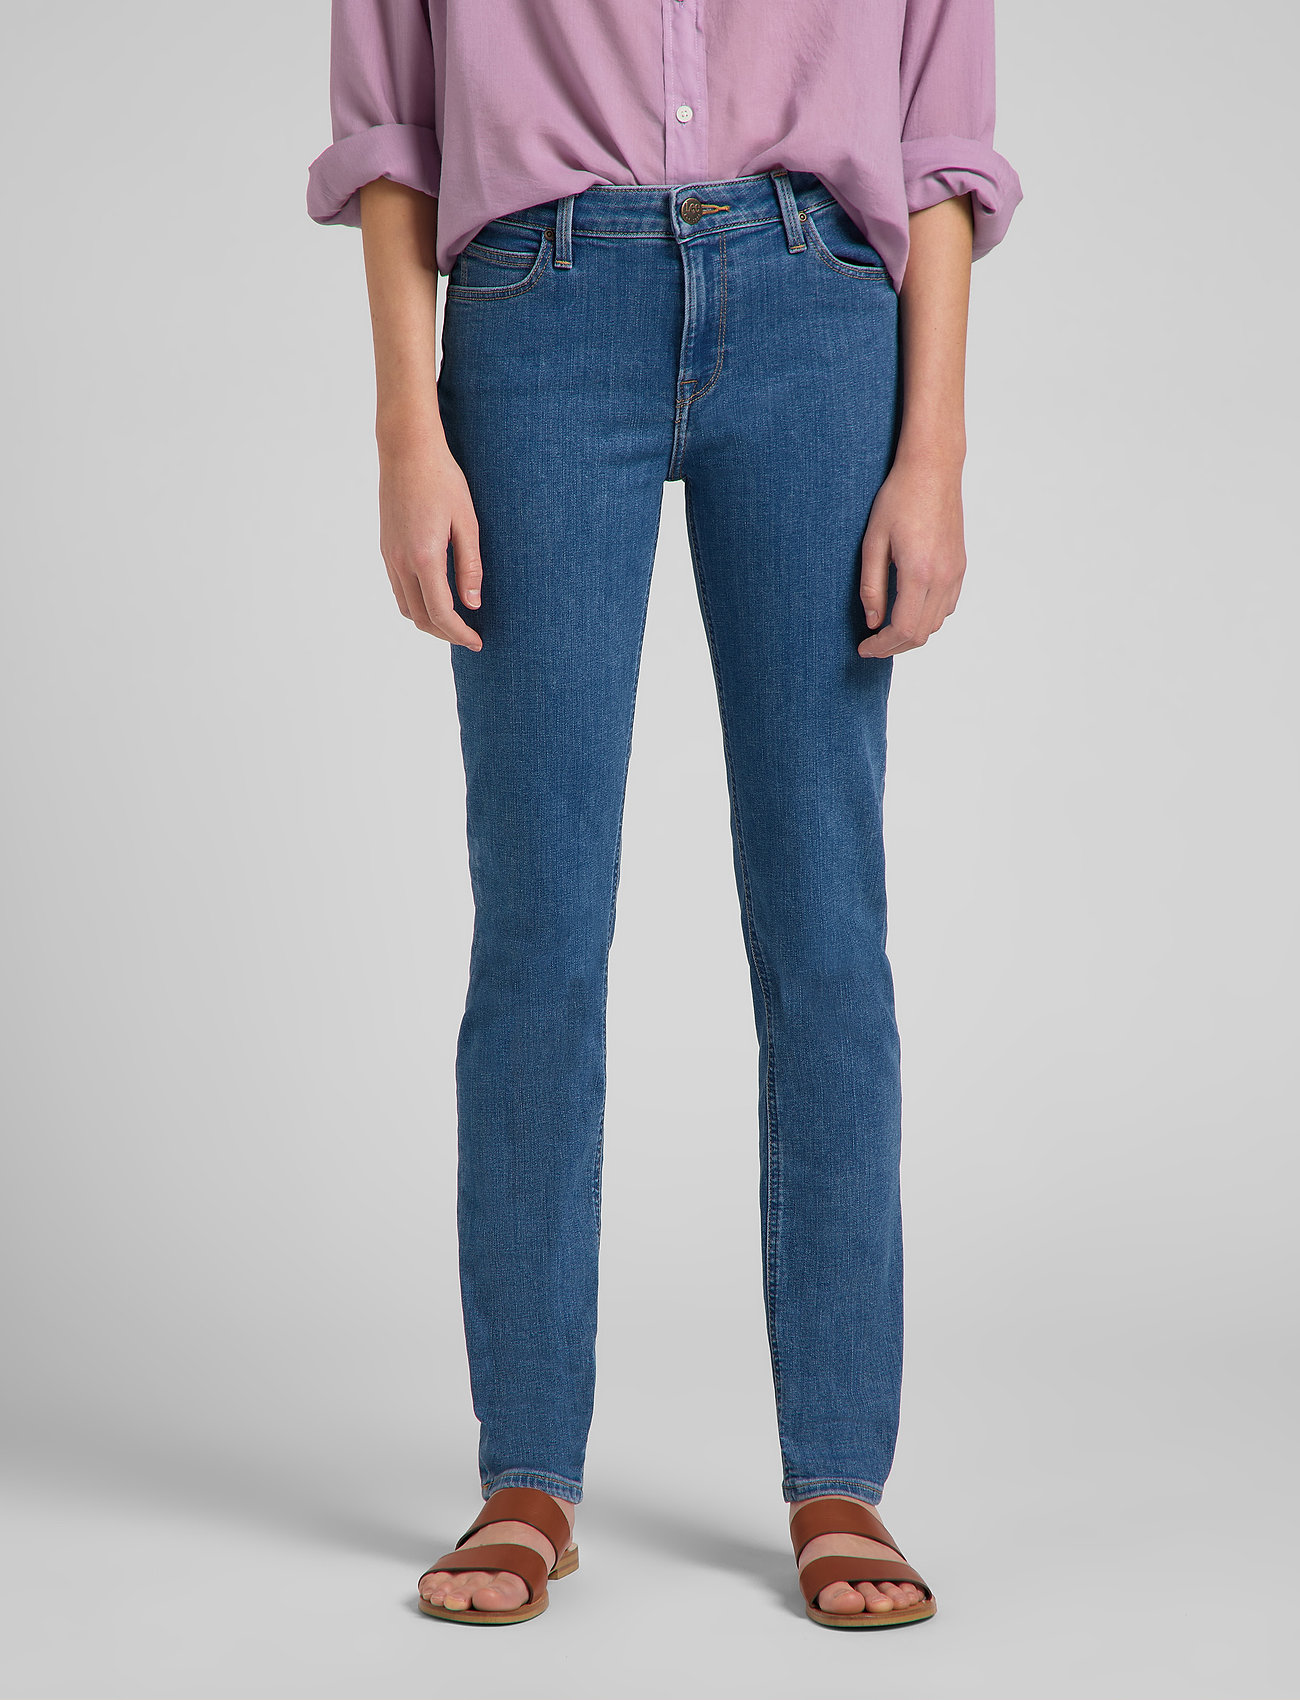 bad metodologi Hvor Lee Jeans Elly - Slim jeans - Boozt.com